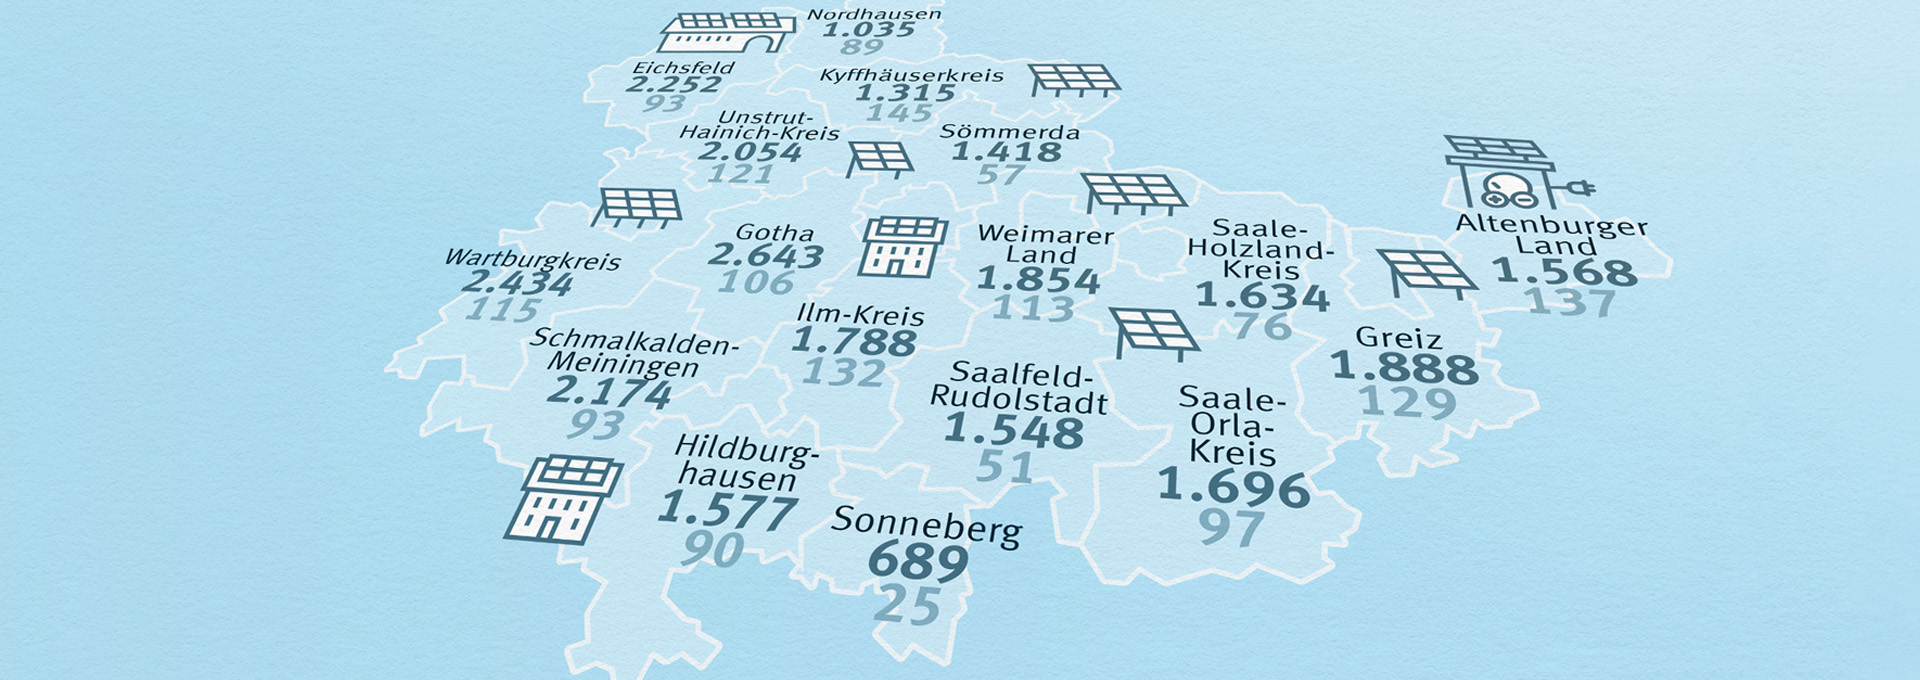 Eine Infografik zeigt die aktuelle Anzahl an installierten PV-Anlagen in den Landkreisen